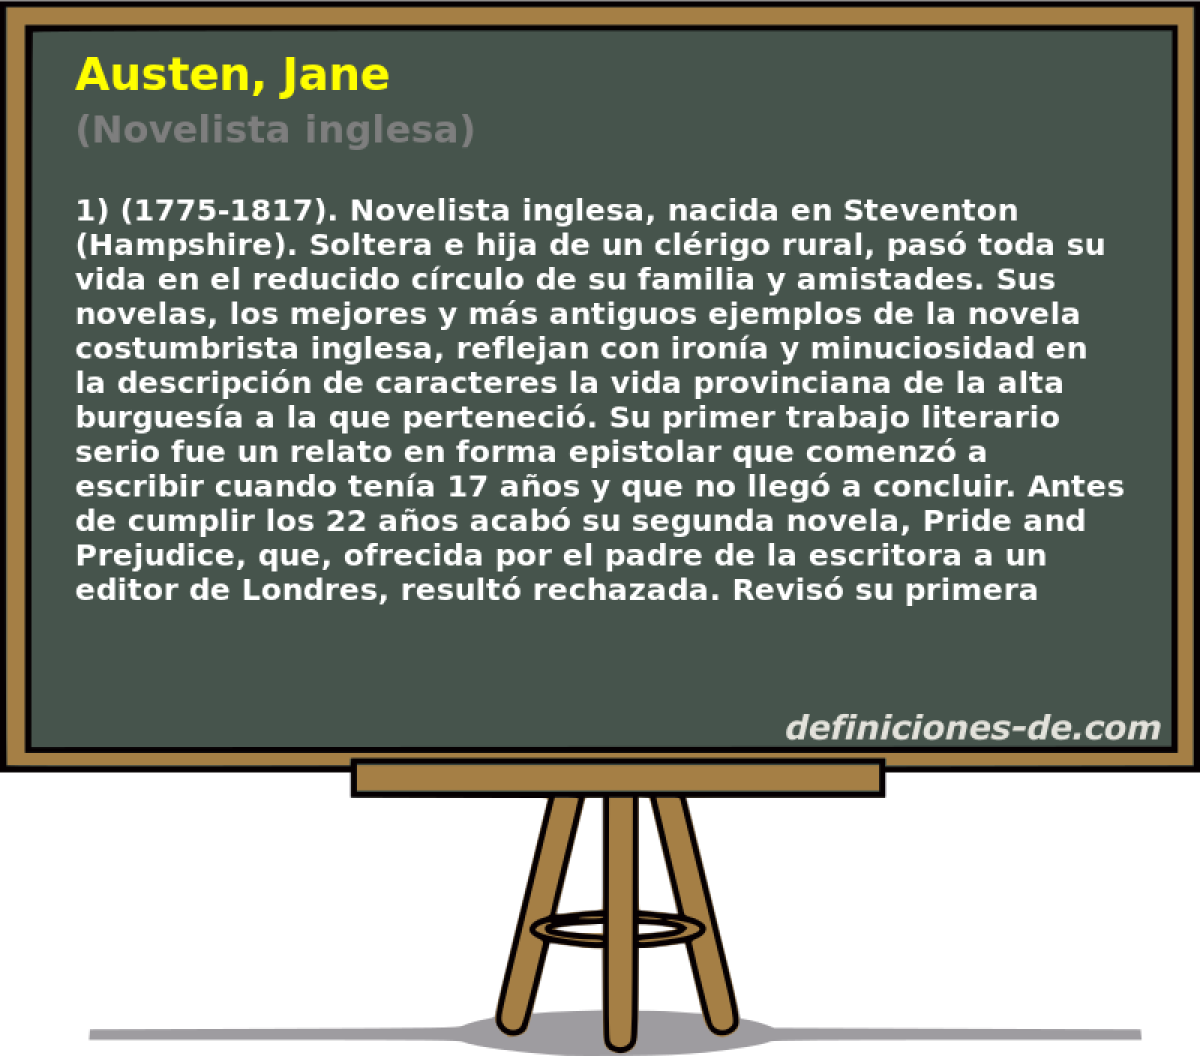 Austen, Jane (Novelista inglesa)